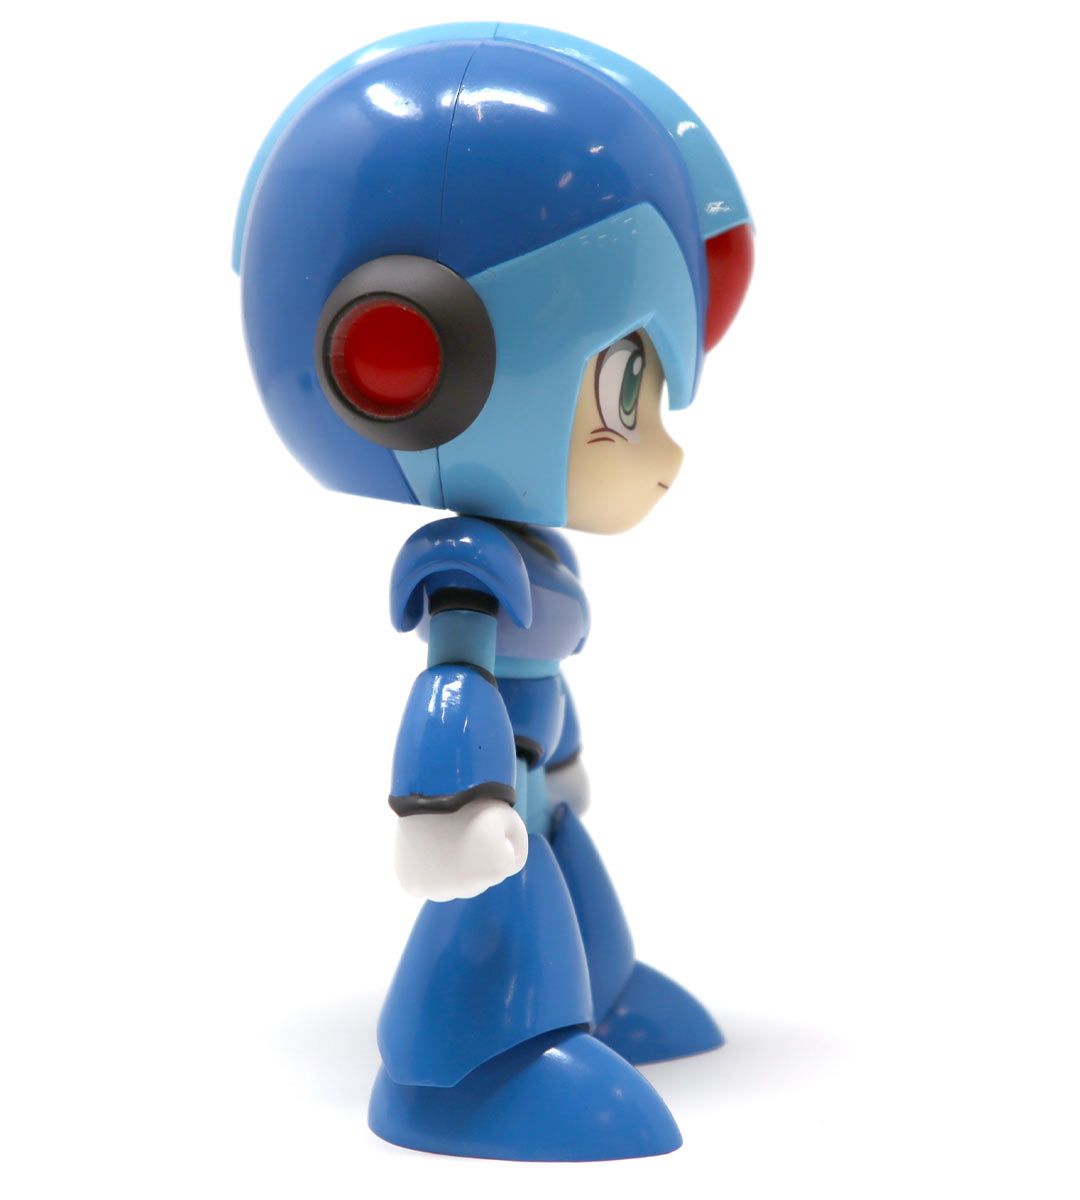 Nendoroid - Rock Man X (Mega Man X)